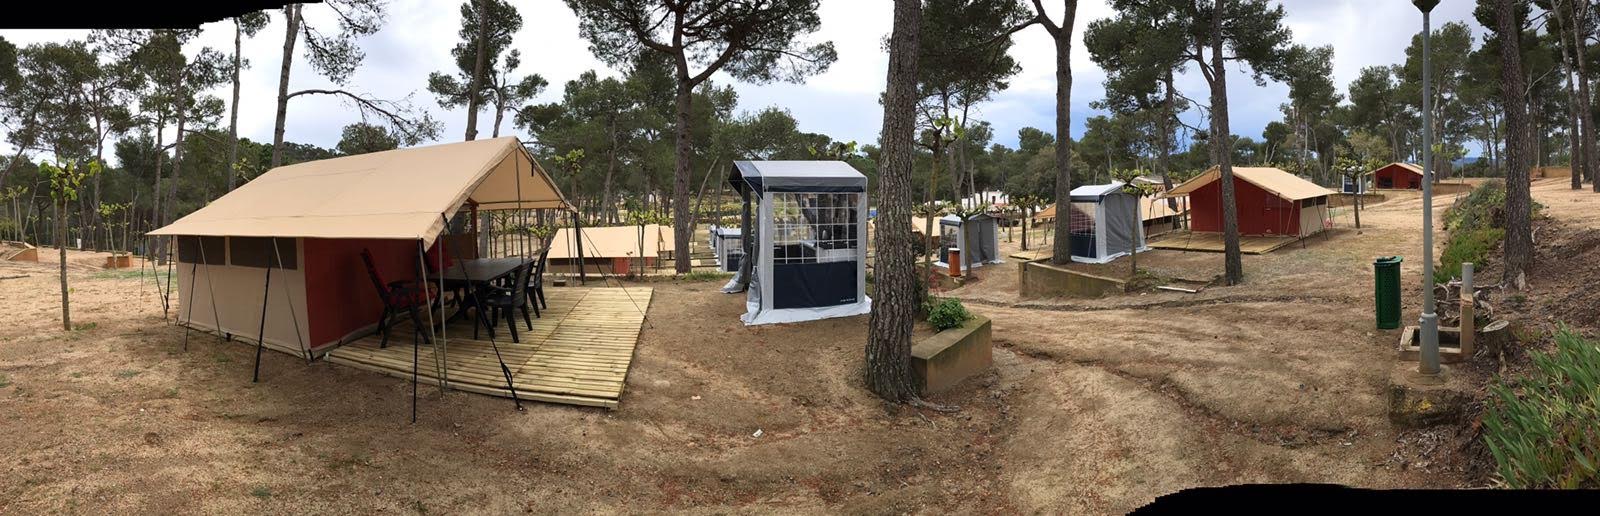 Rent a Safari tent in Spain at the Costa Brava